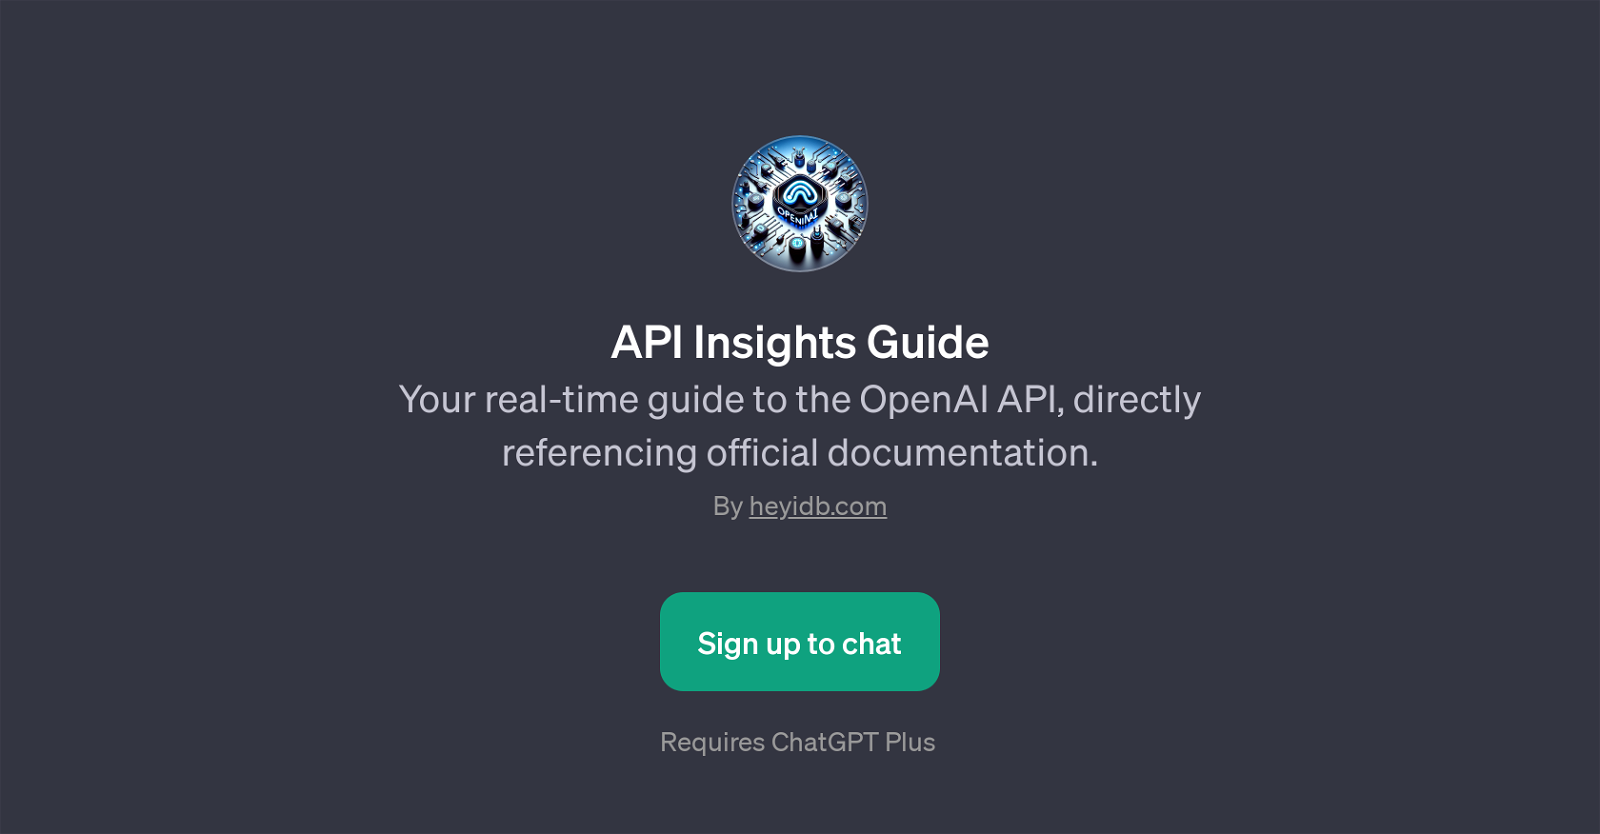 API Insights Guide website